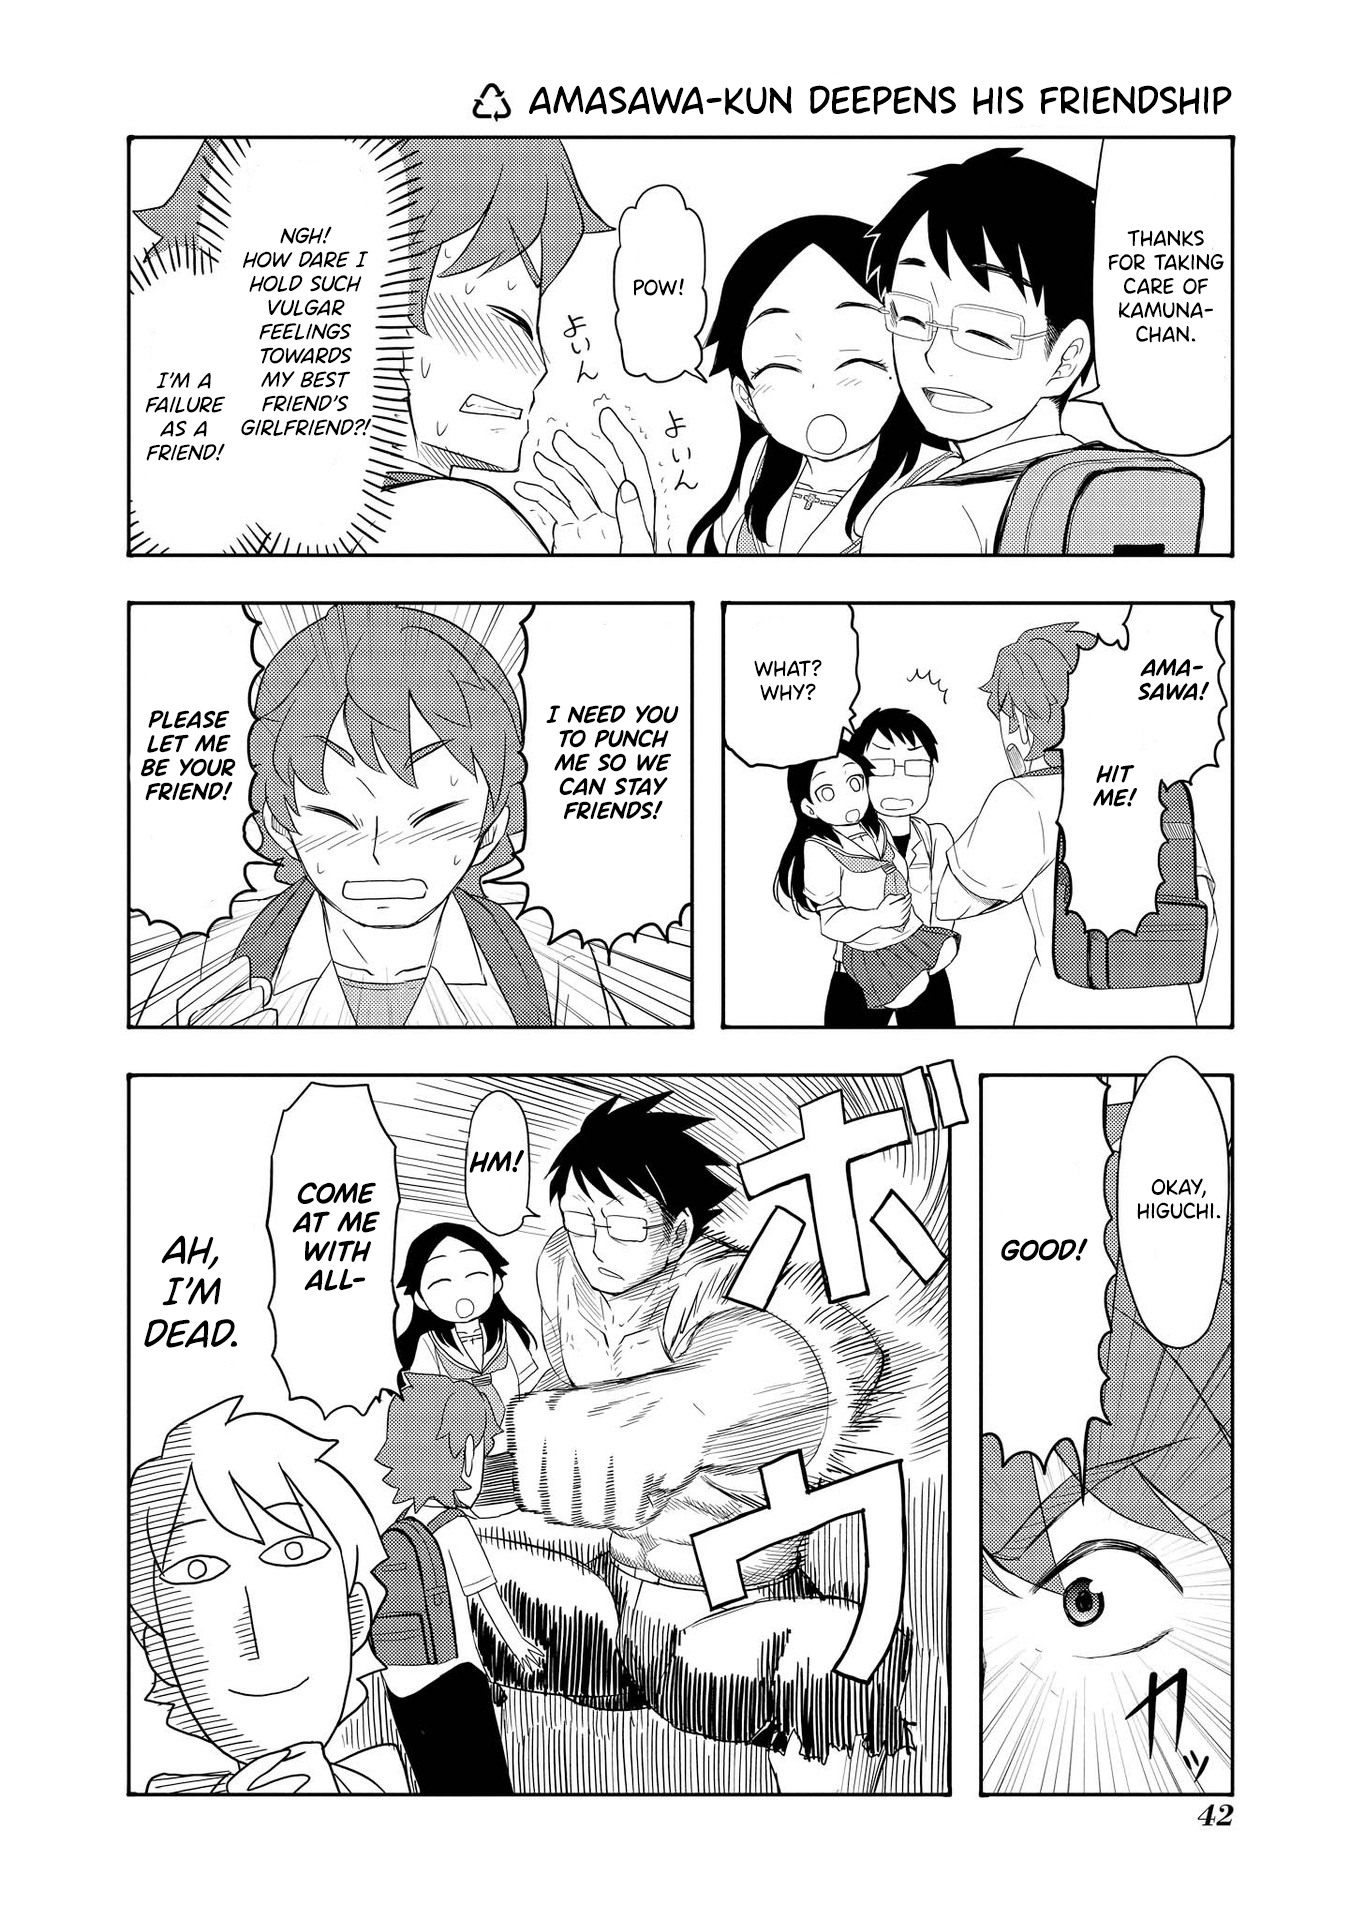 Amasawa-Kun And Kamuna-Chan Chapter 29: Amasawa-Kun Deepens His Friendship - Picture 1